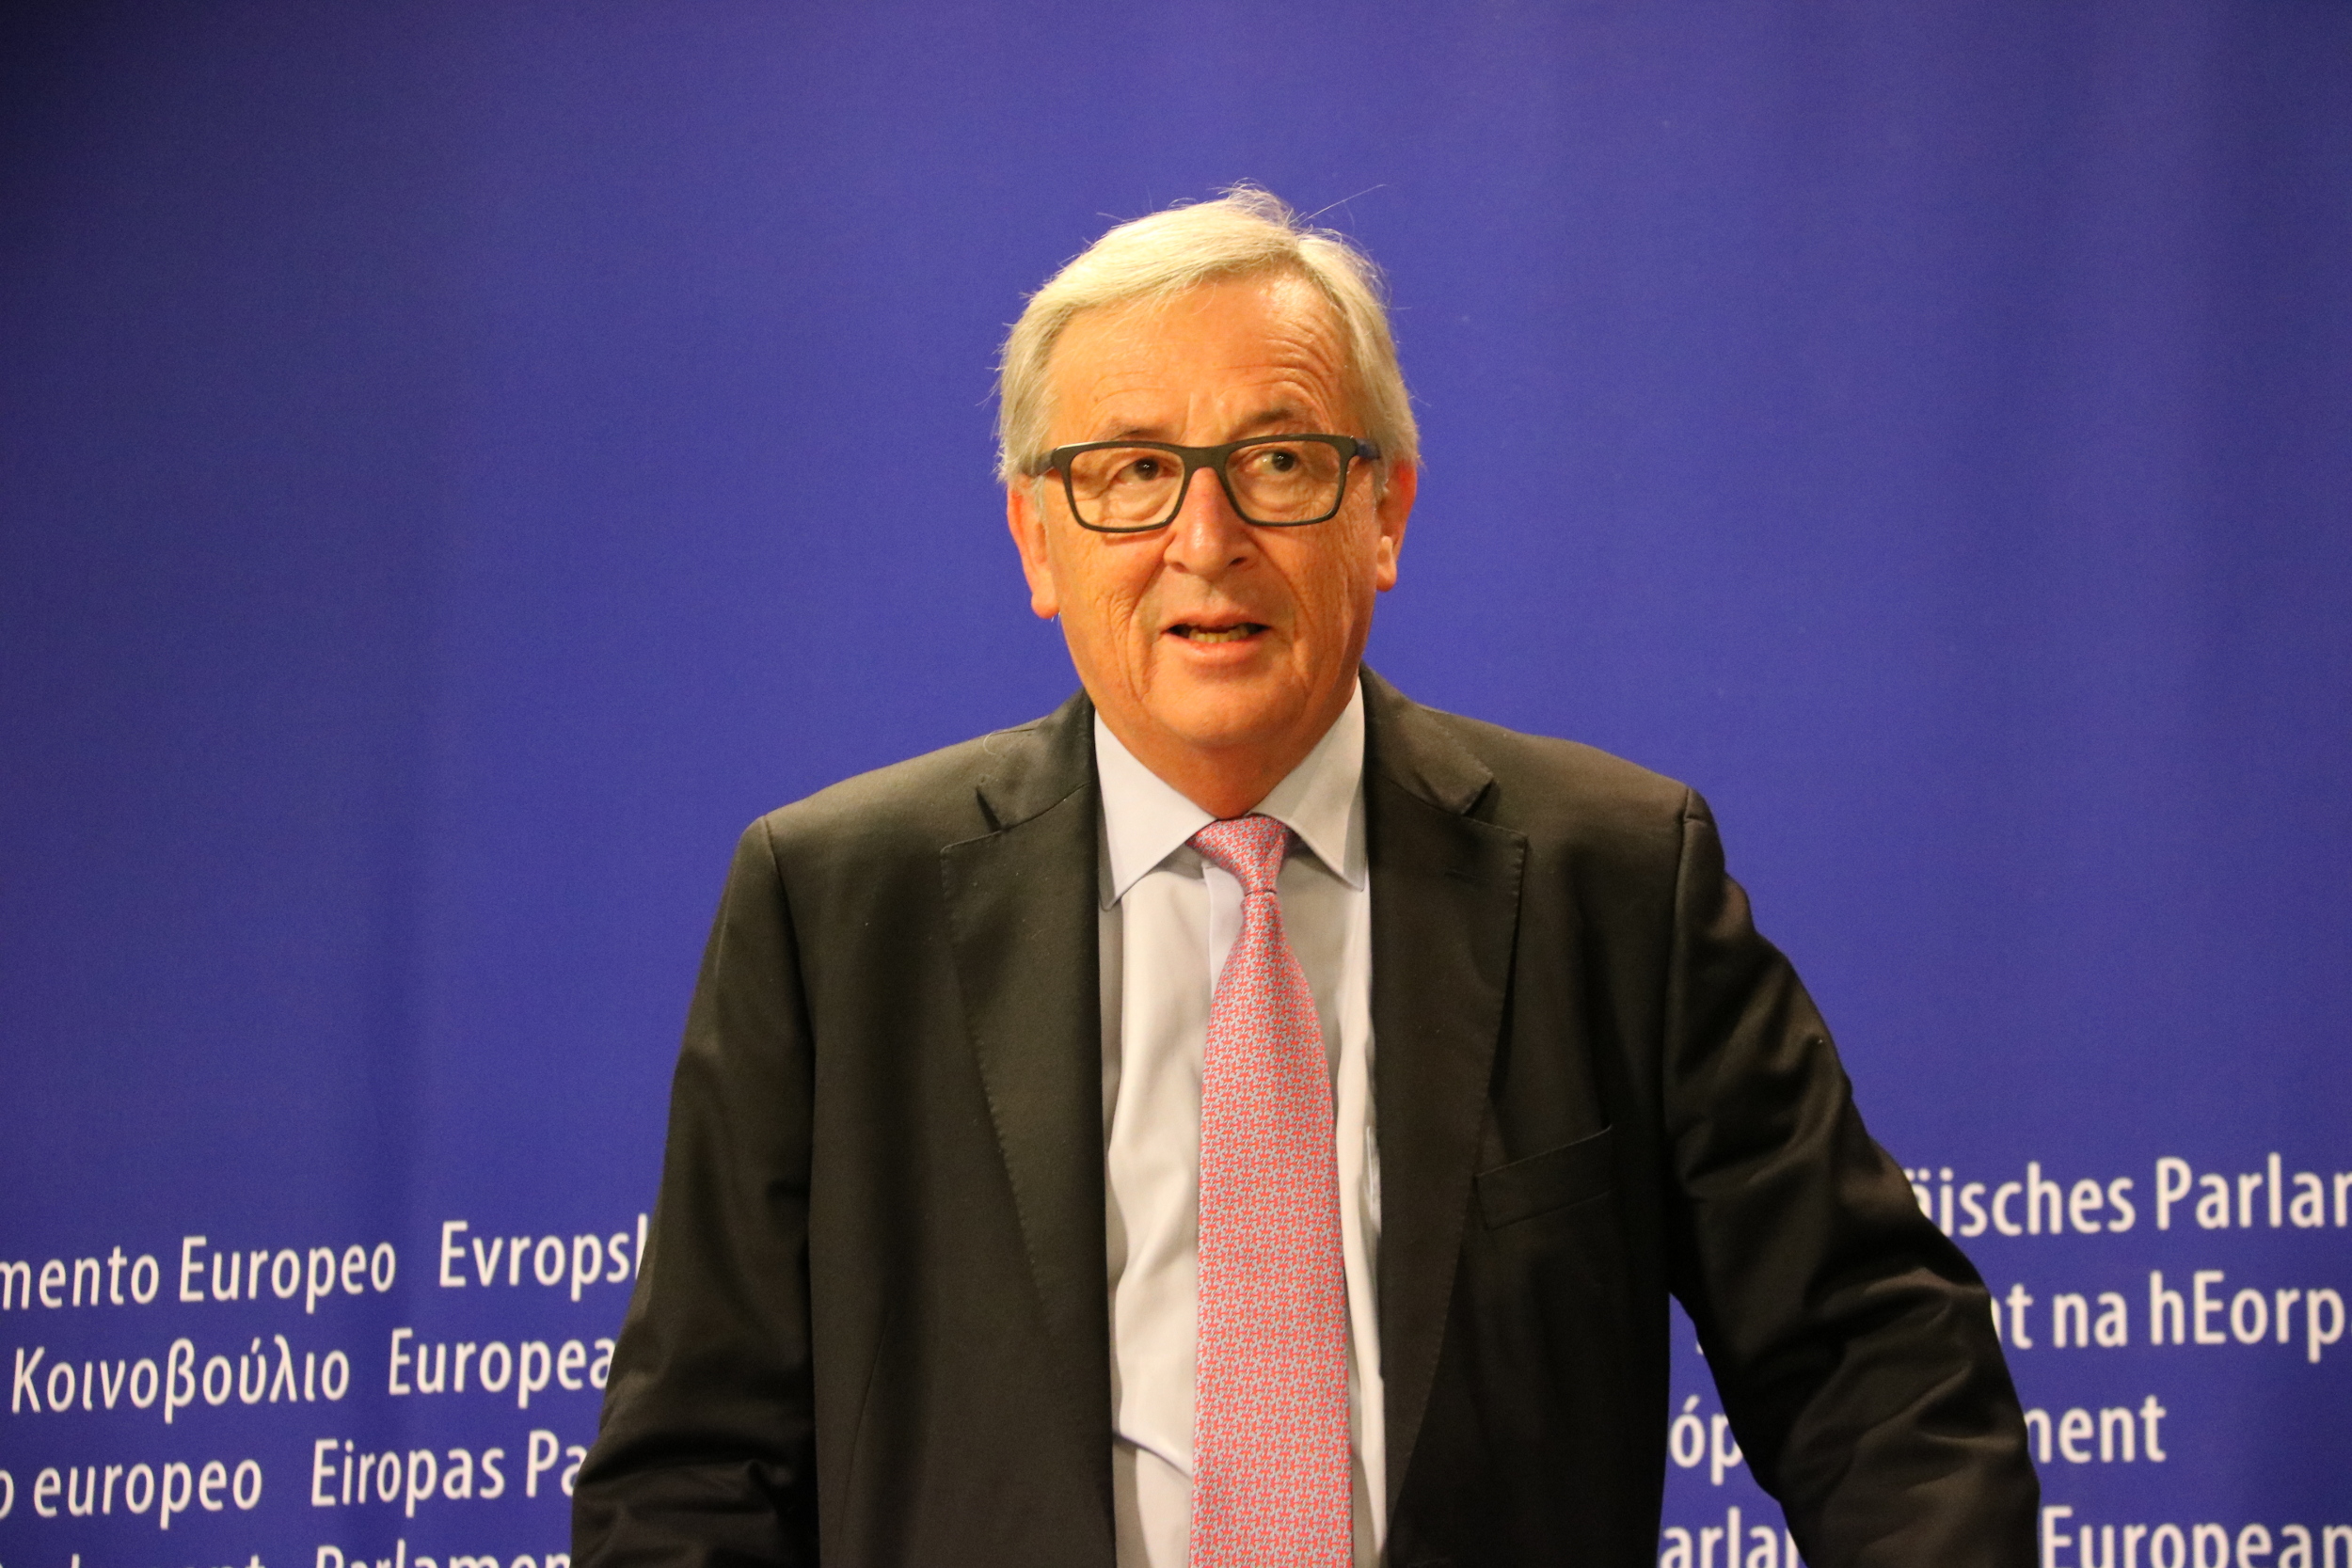 Jean Claude Juncker (by Laura Pous)